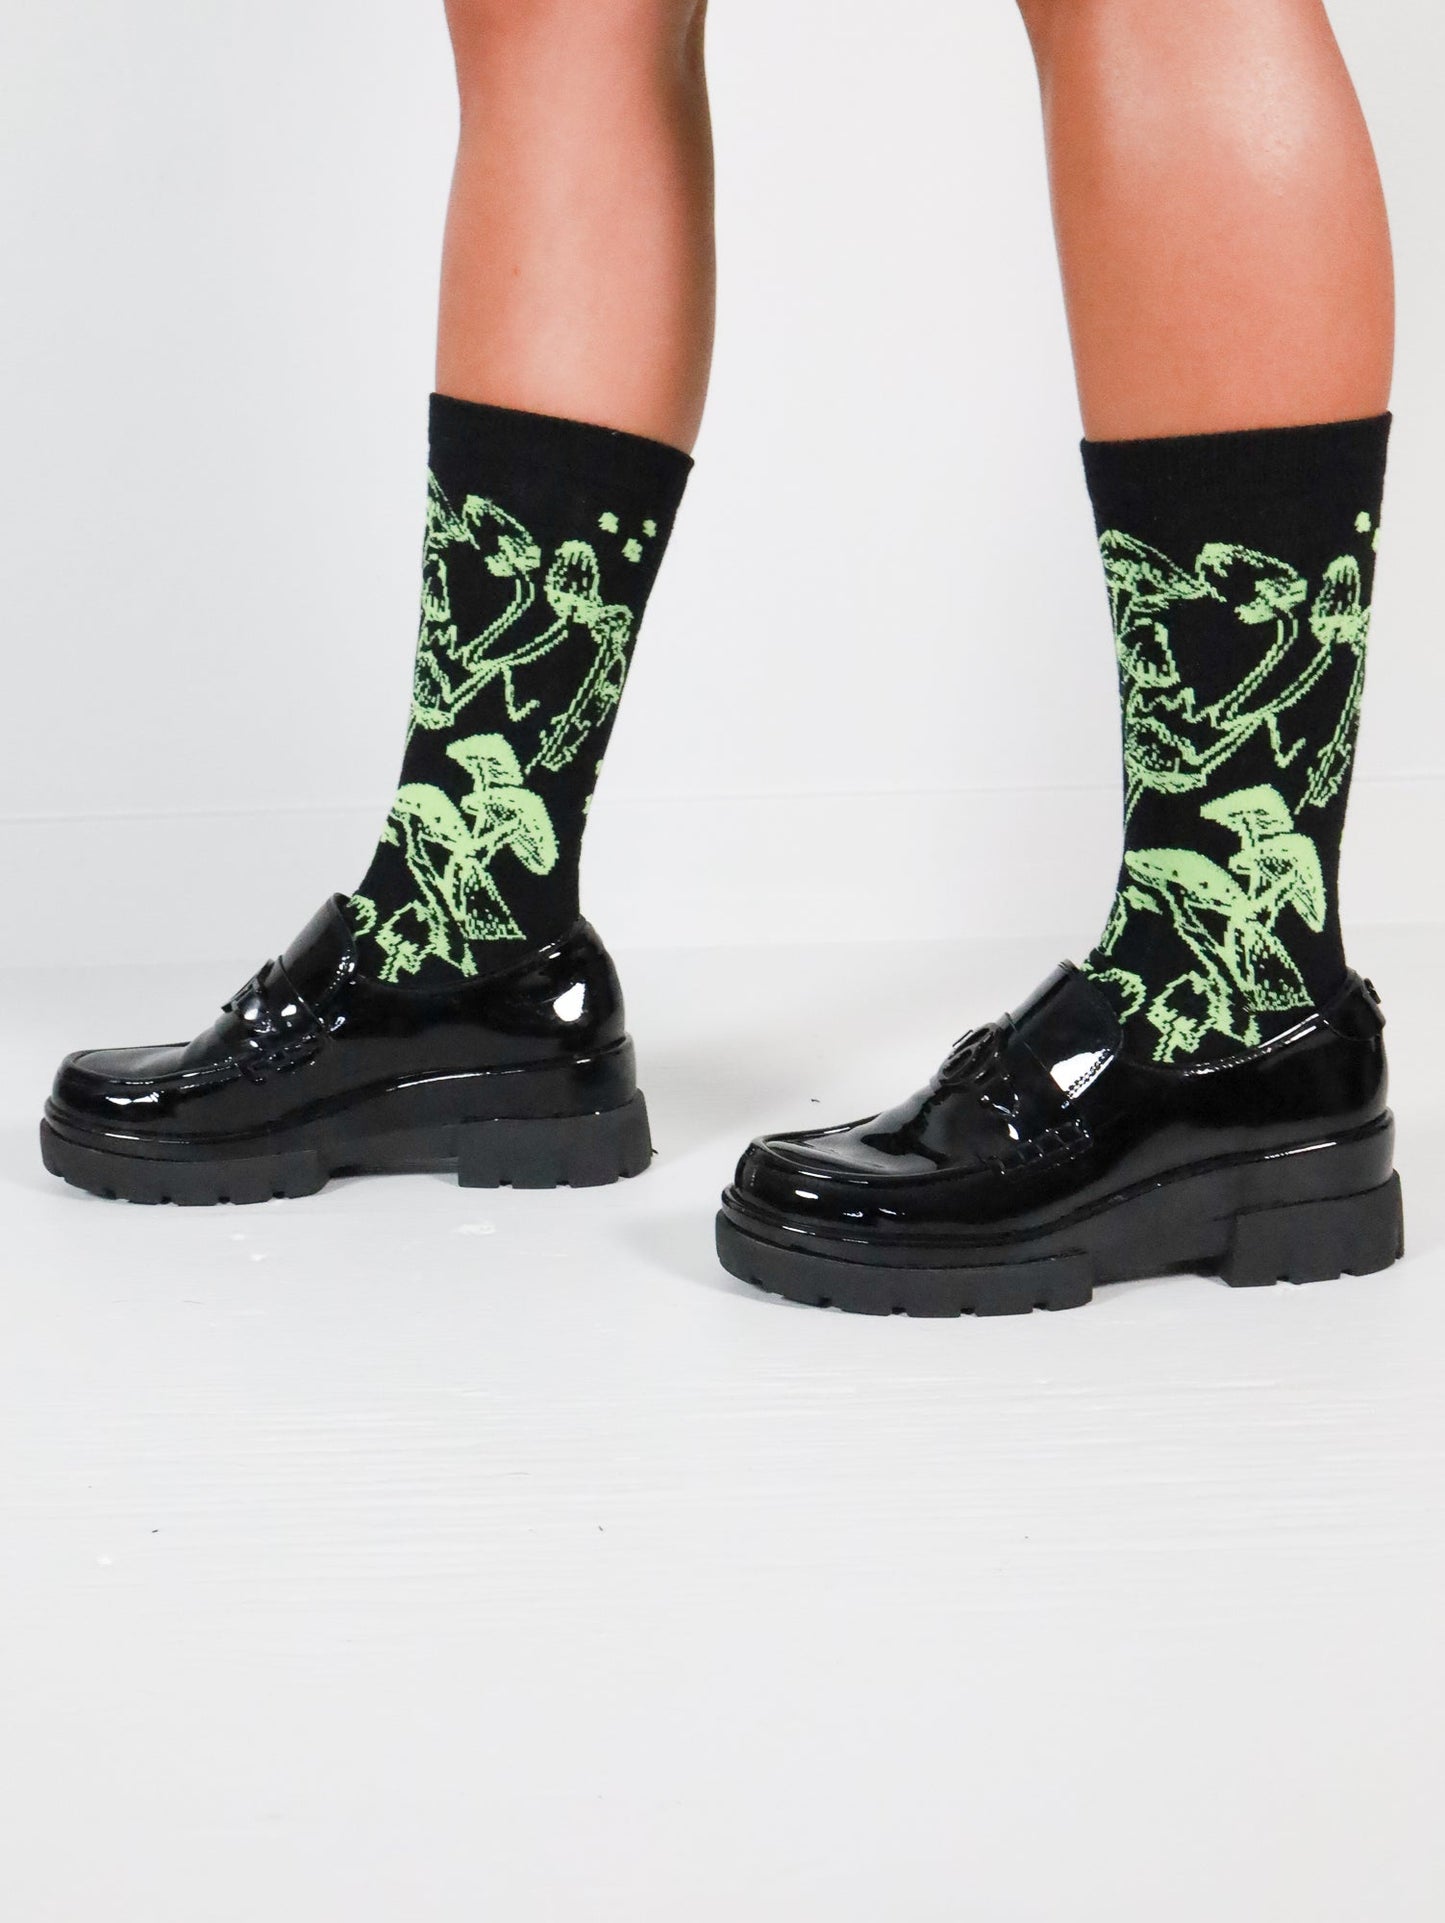 Chartreuse Shroom Socks